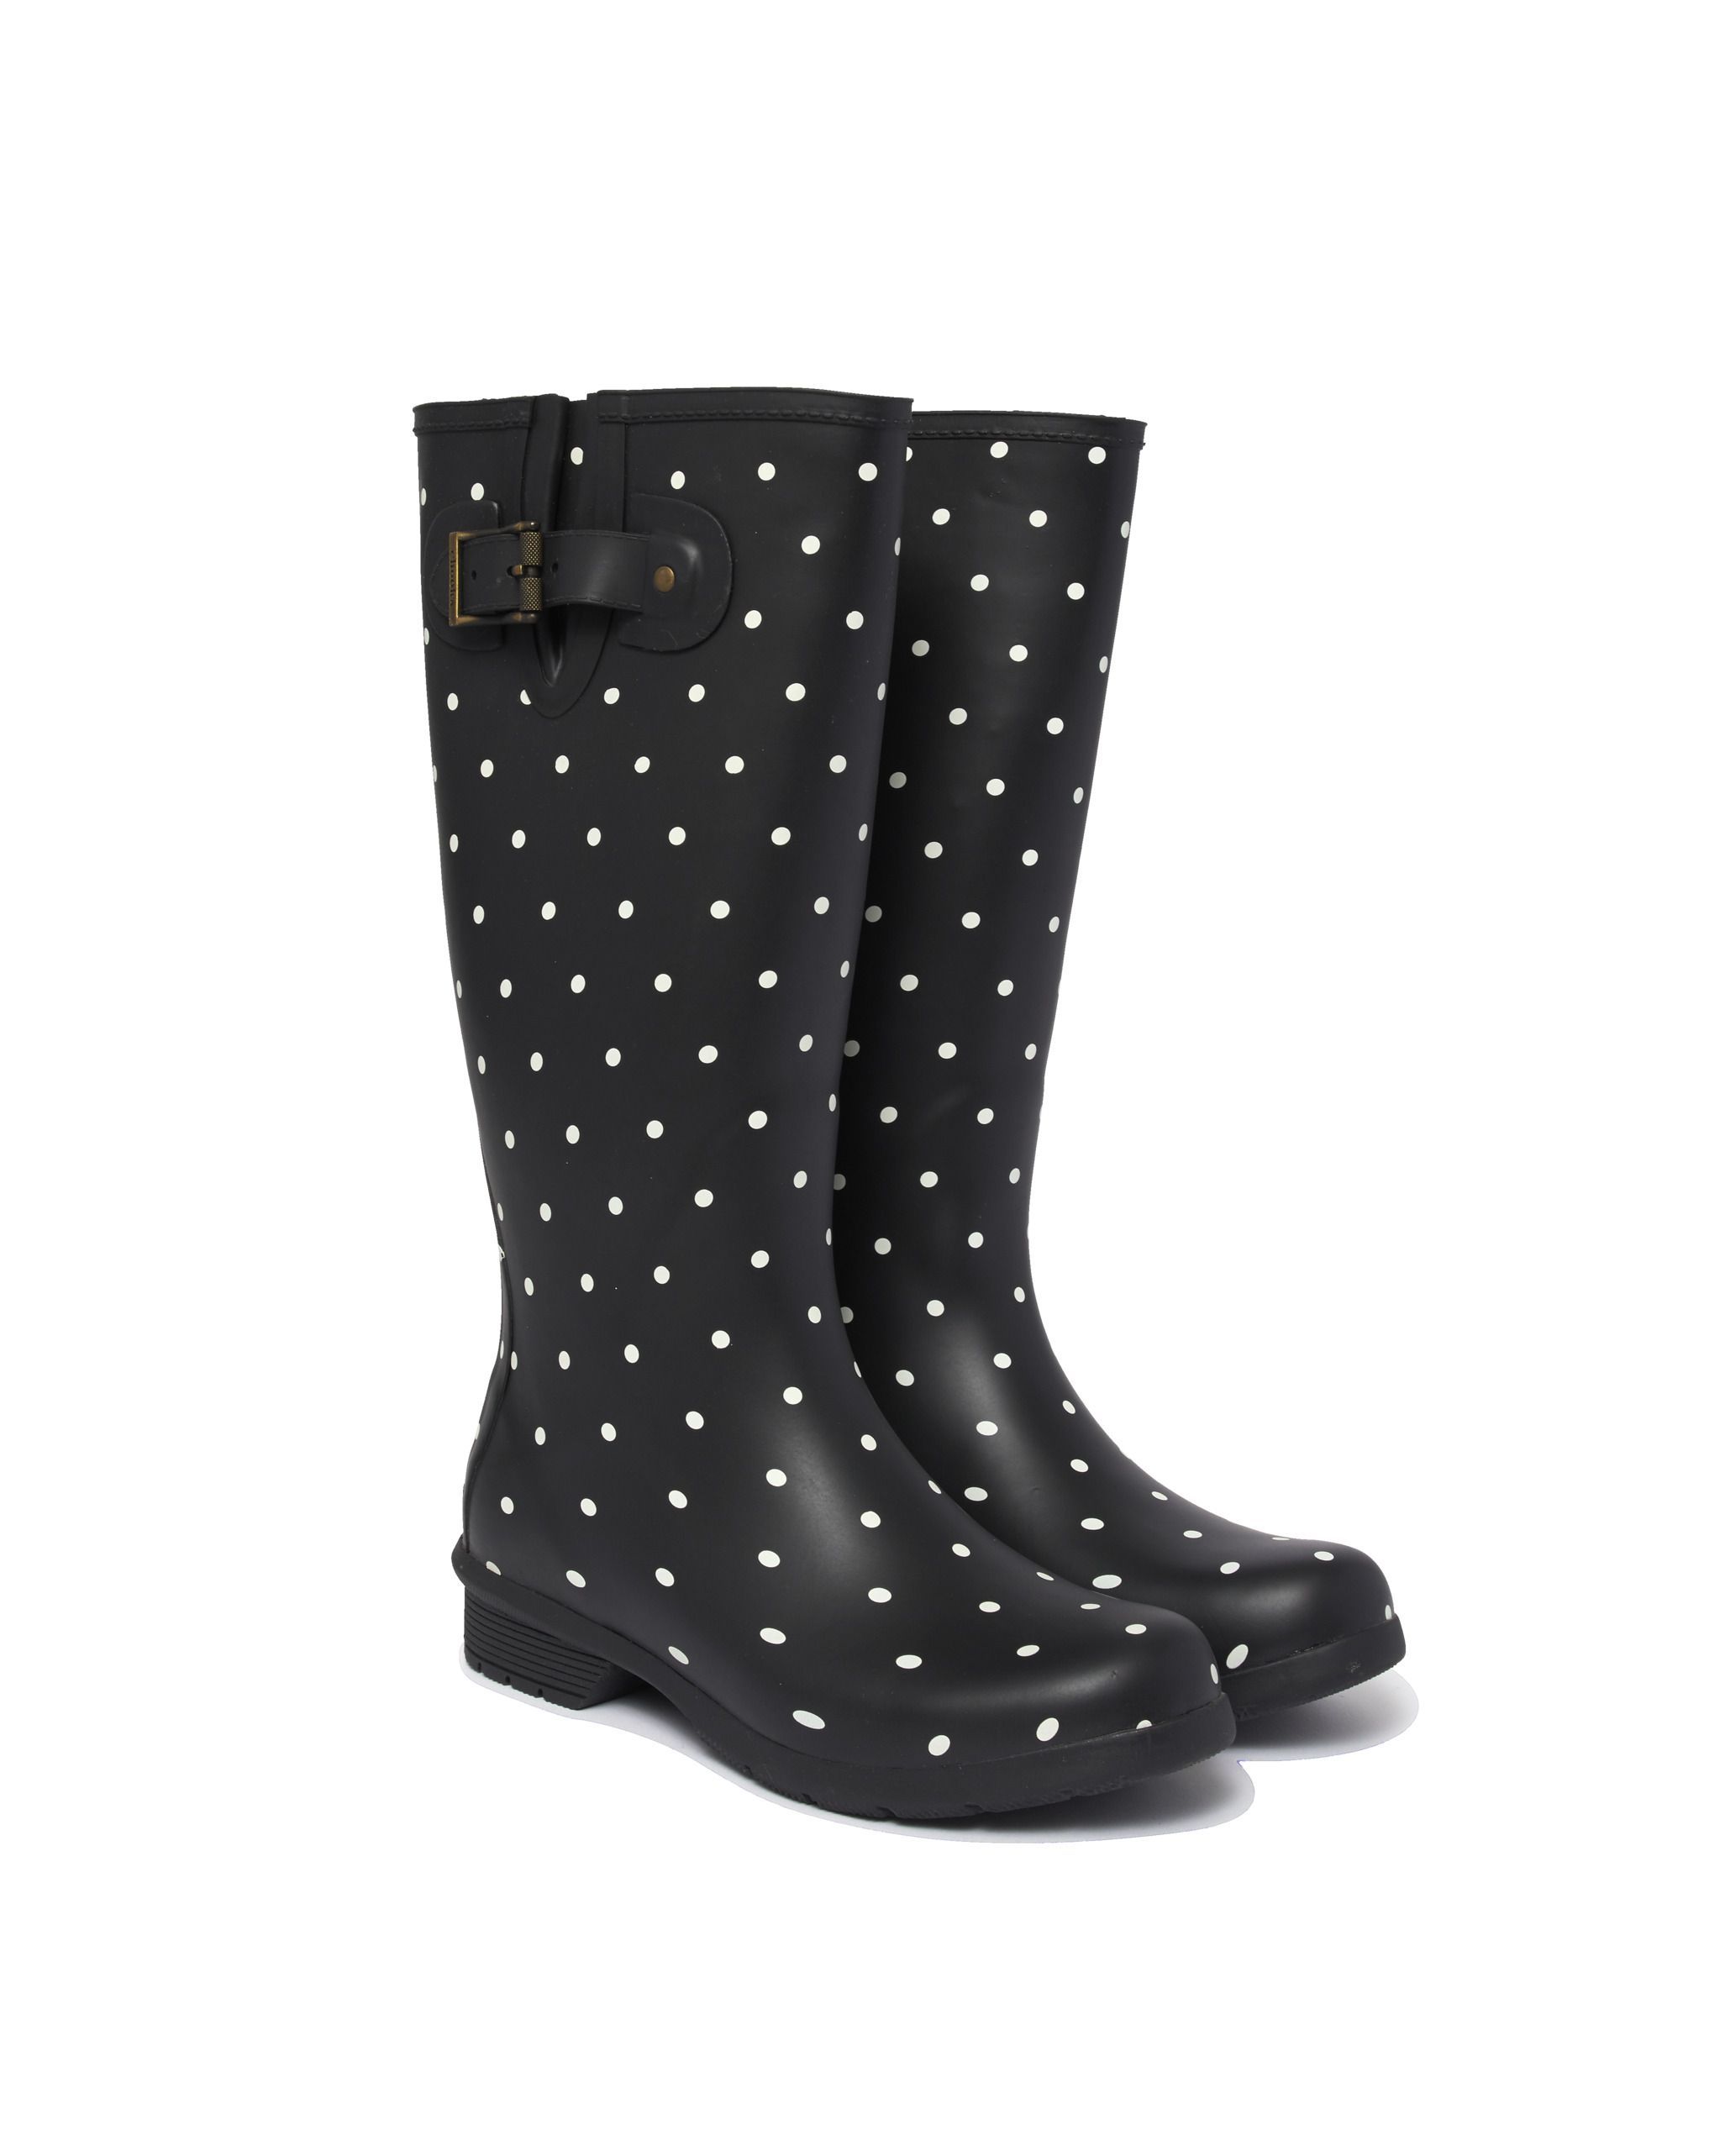 ugg polka dot rain boots